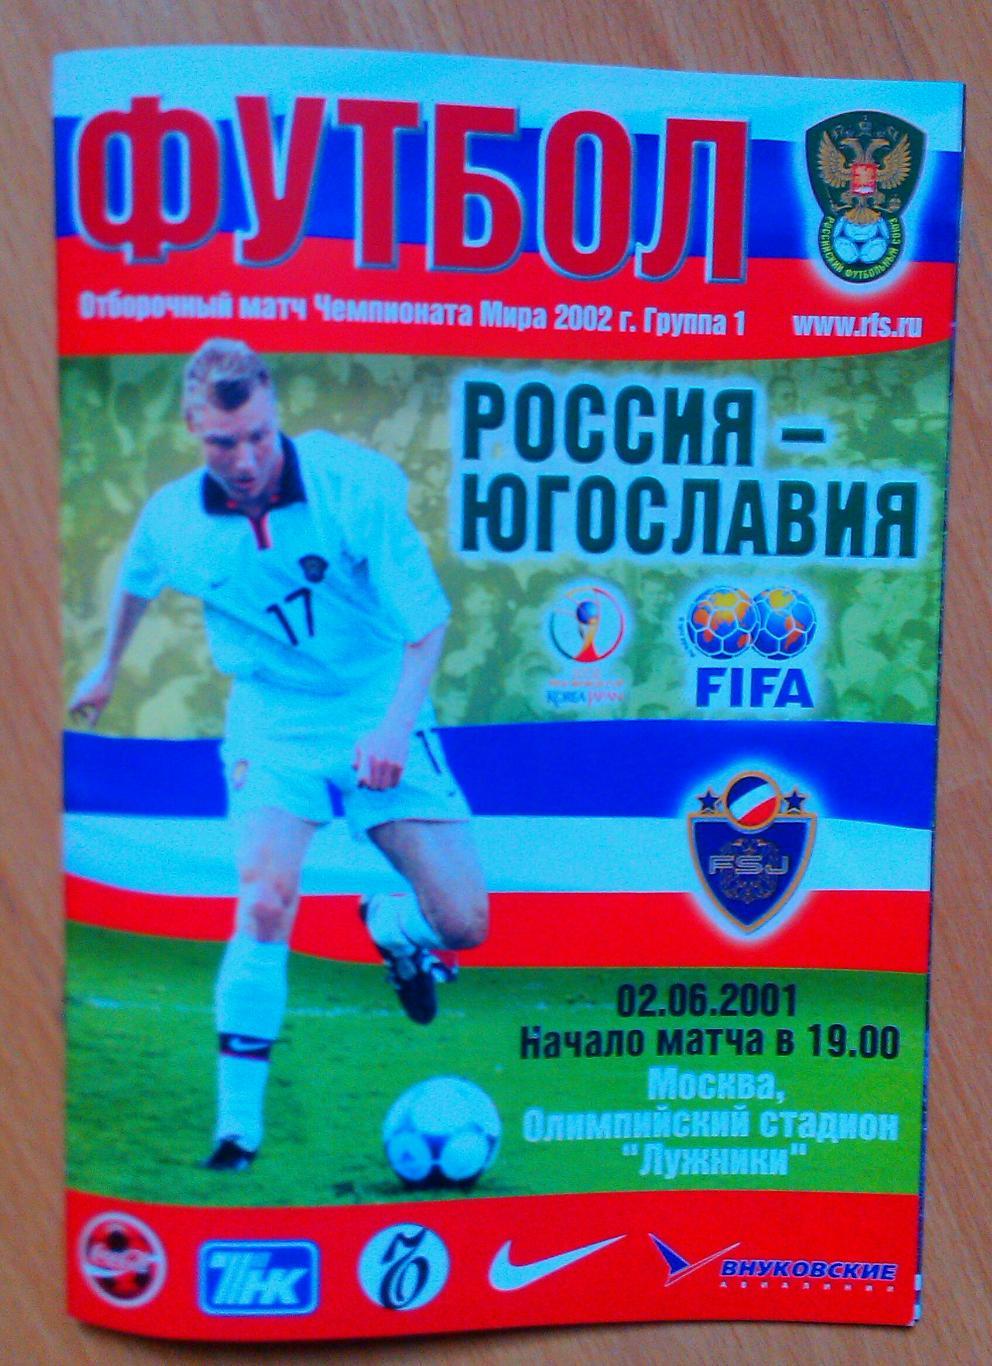 Россия - Югославия 02.06.2001